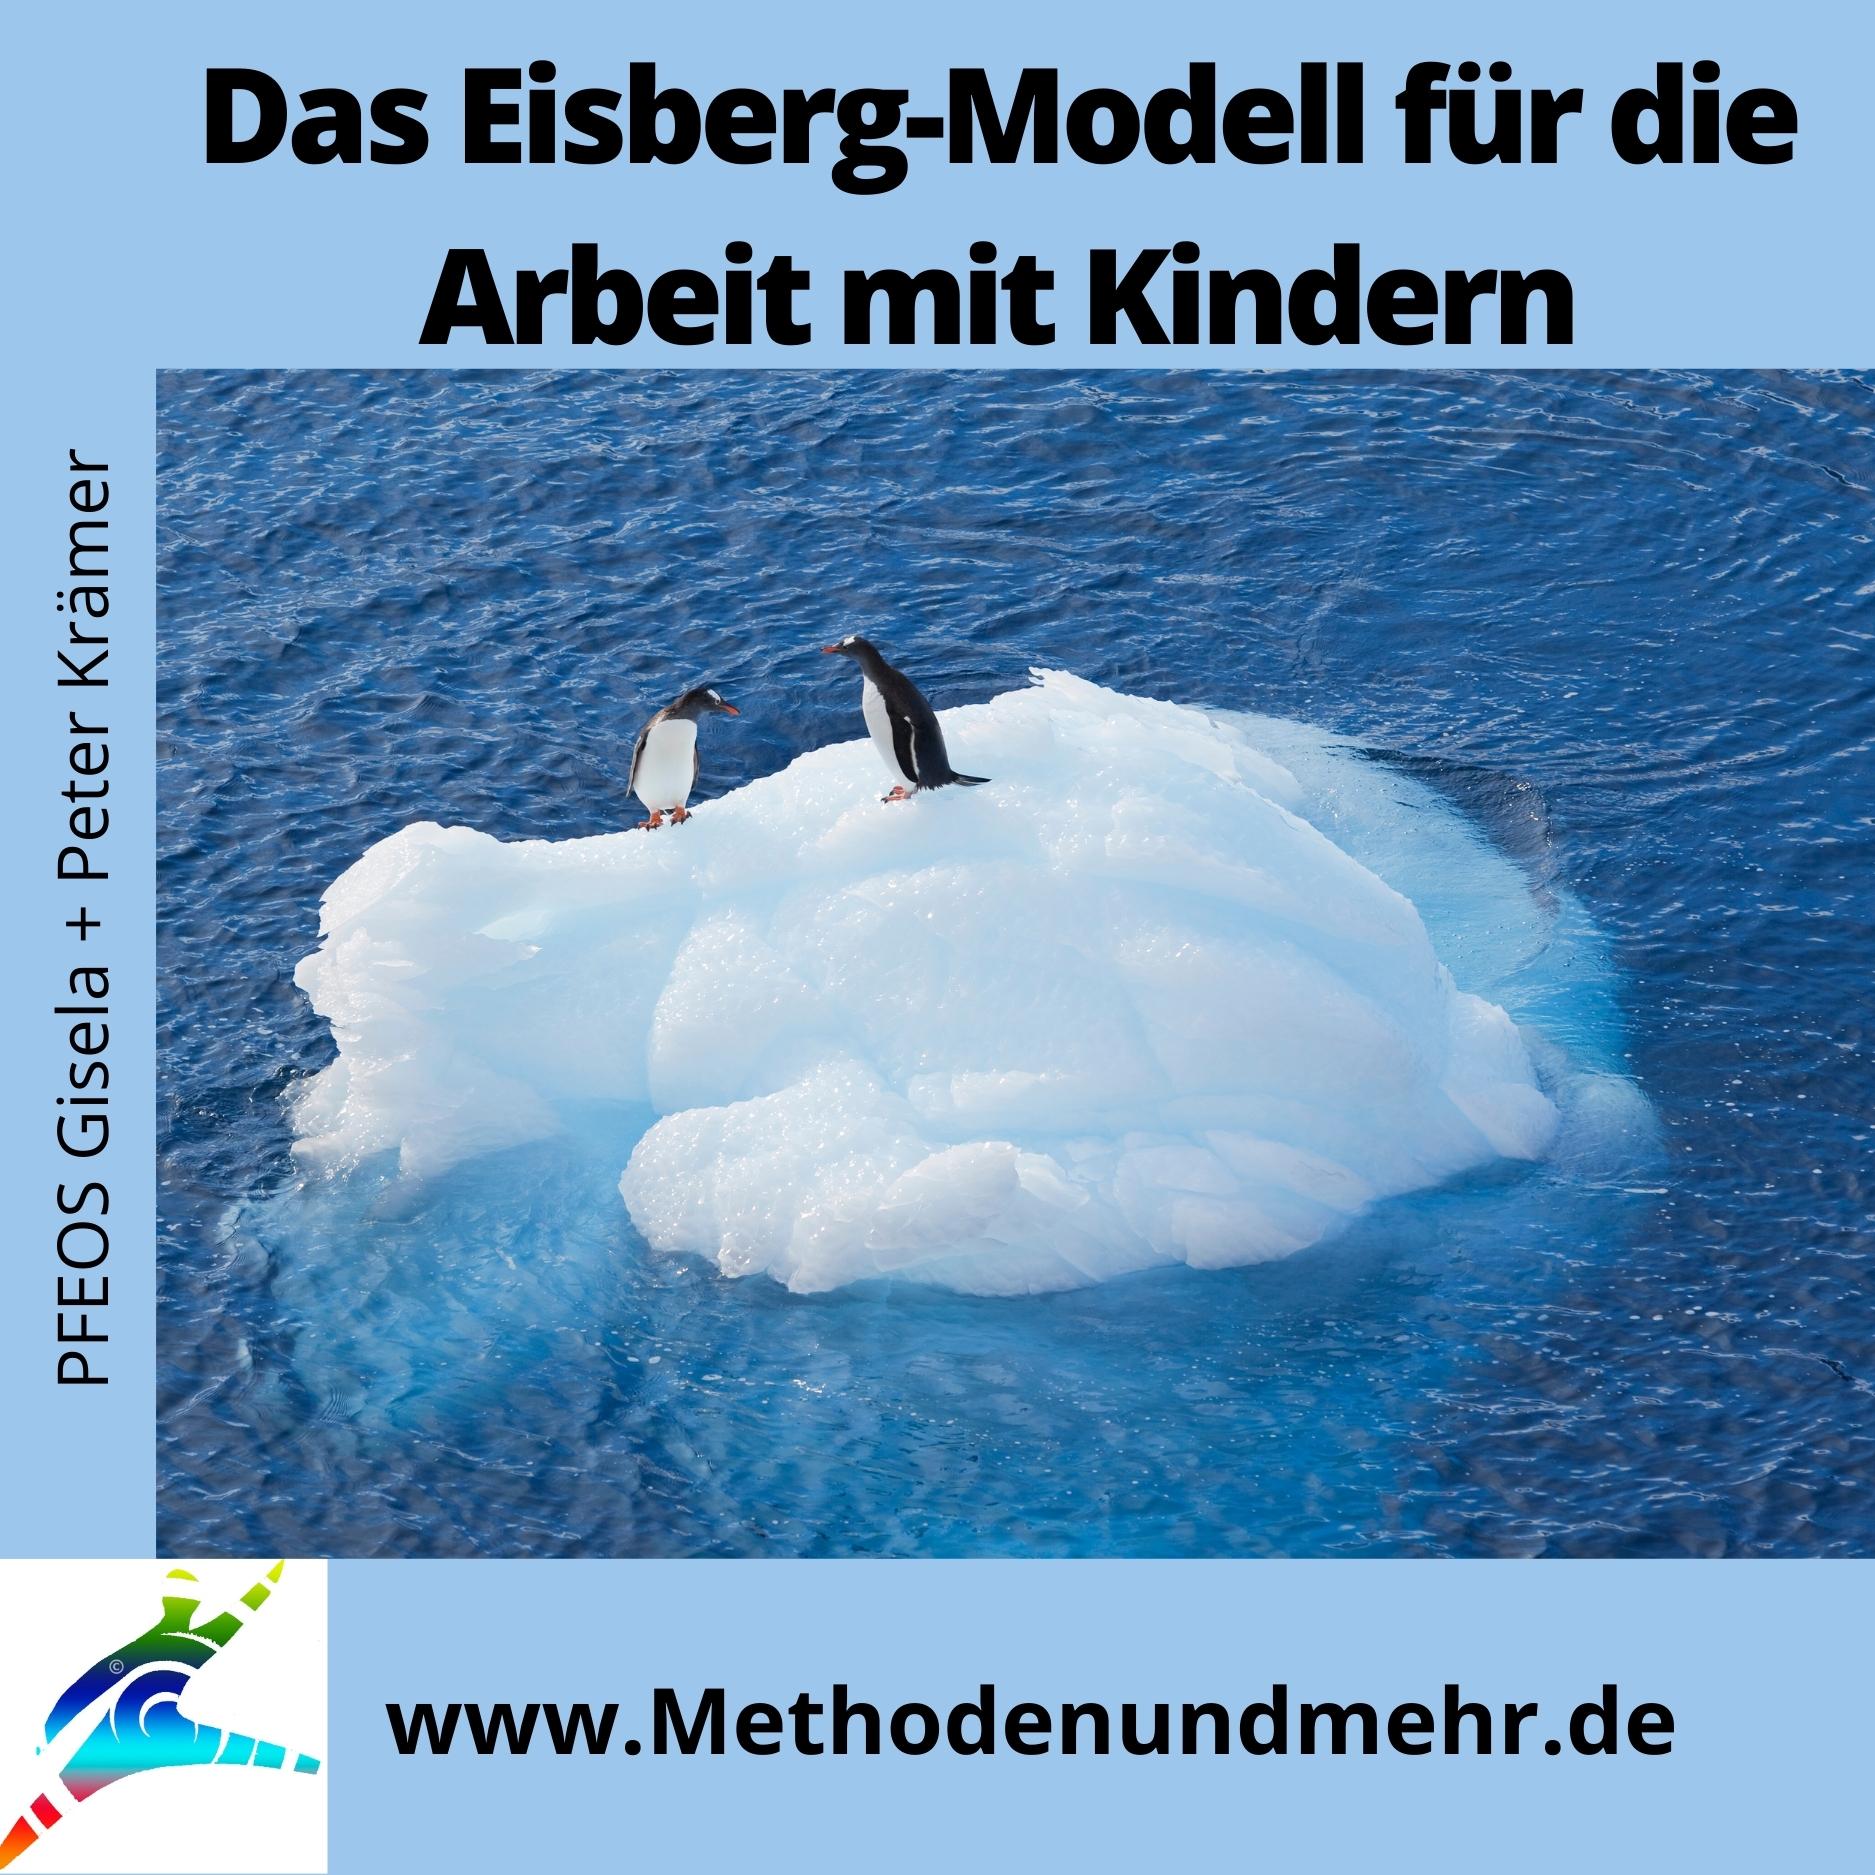 Das Eisberg-Modell für die Arbeit mit Kindern